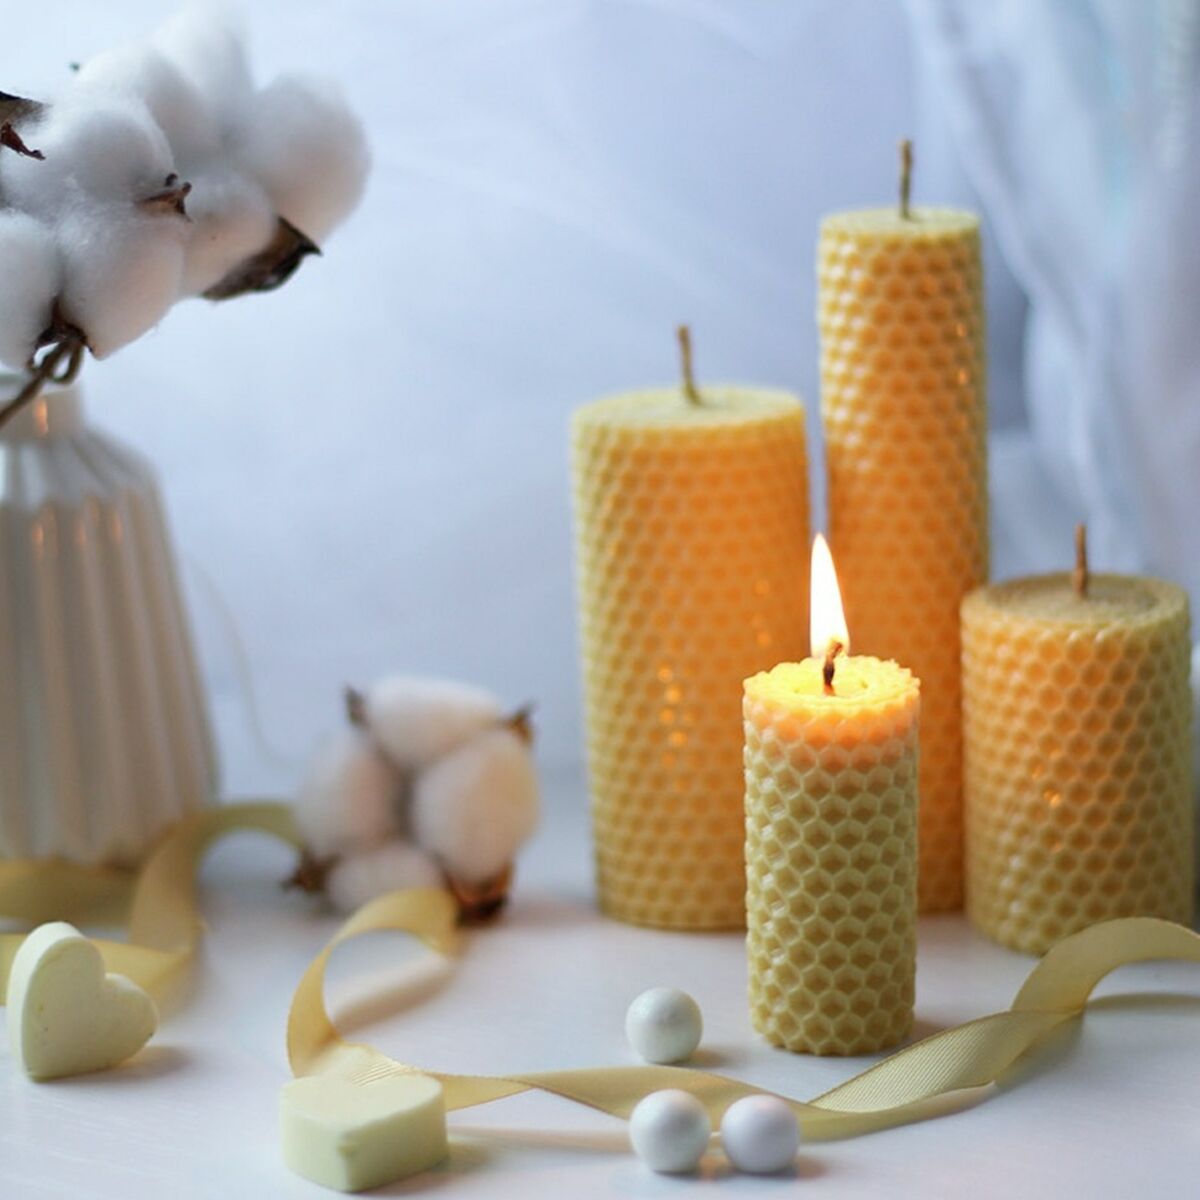 Les bougies pour l'amour : un objet utile pour séduire